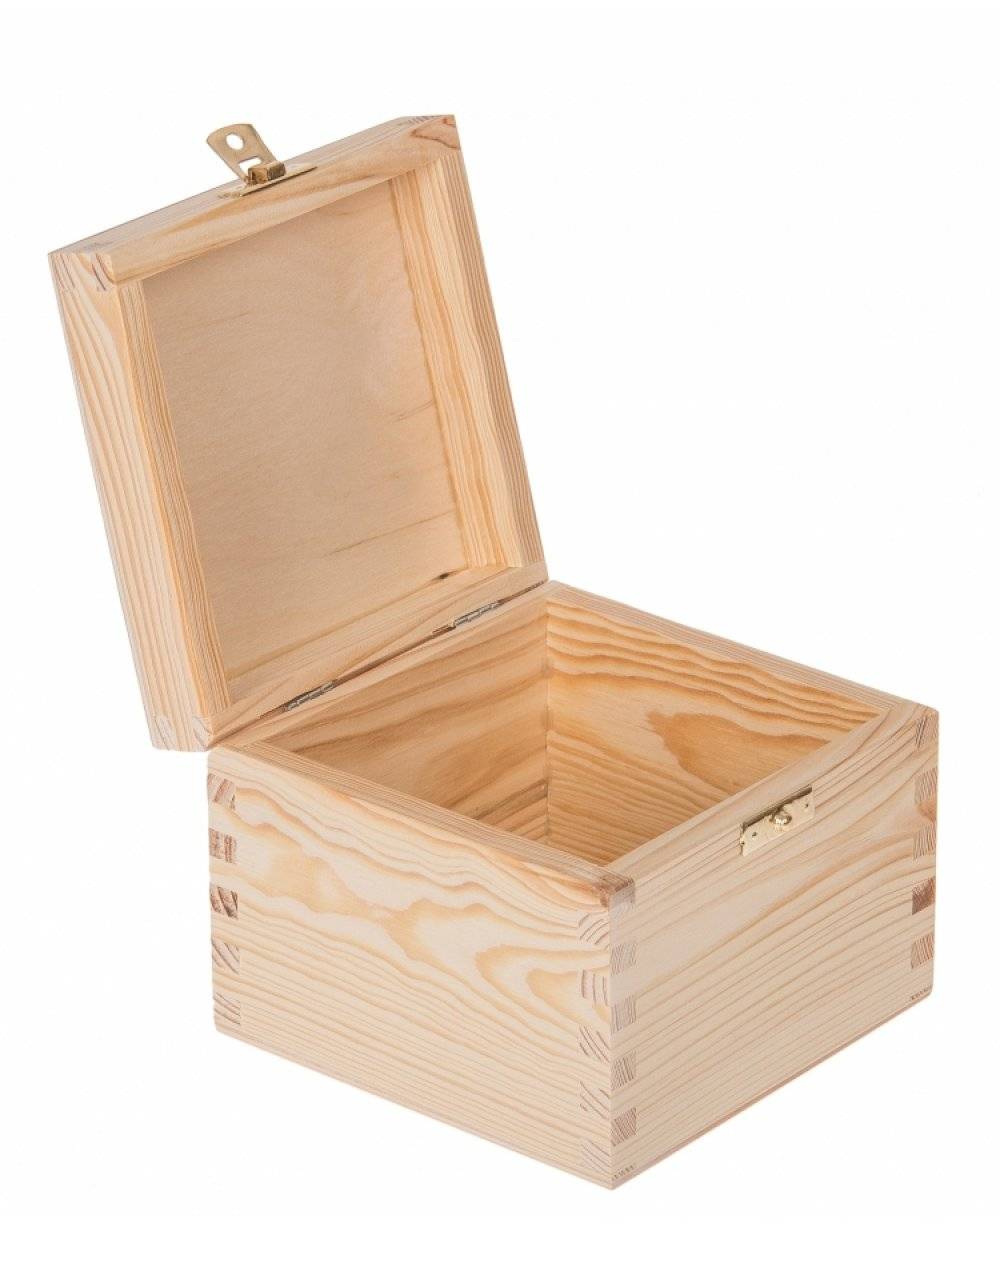 Přírodní dřevěná dárková krabička 16x16x13 cm